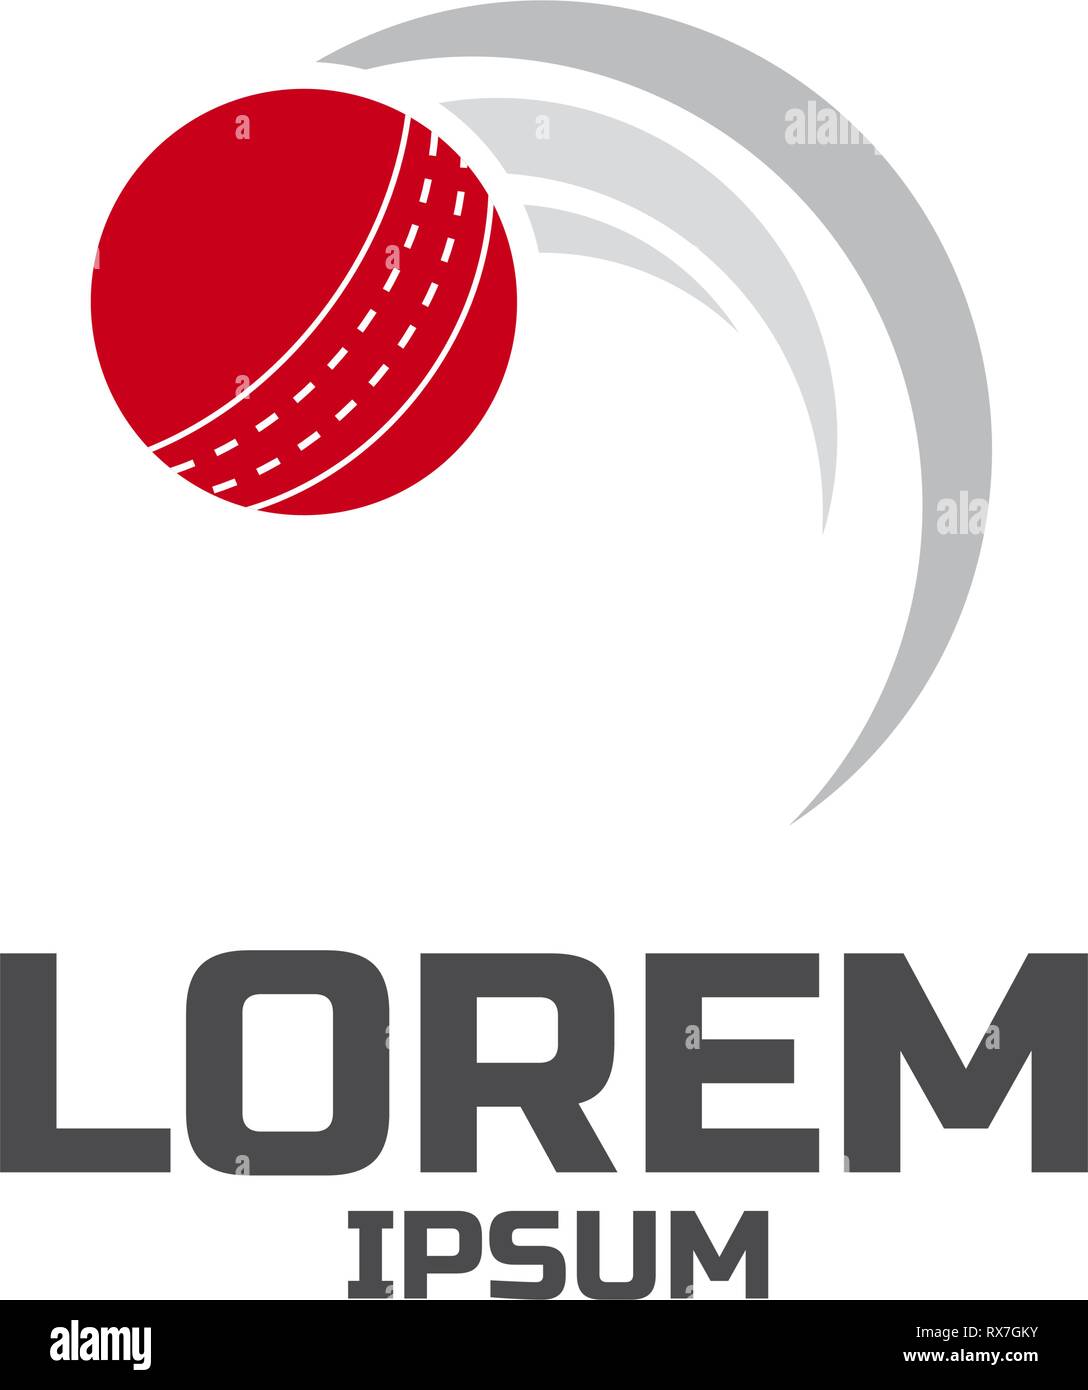 Génova Cricket FC bandeira e logotipo, Itália imagem vetorial de